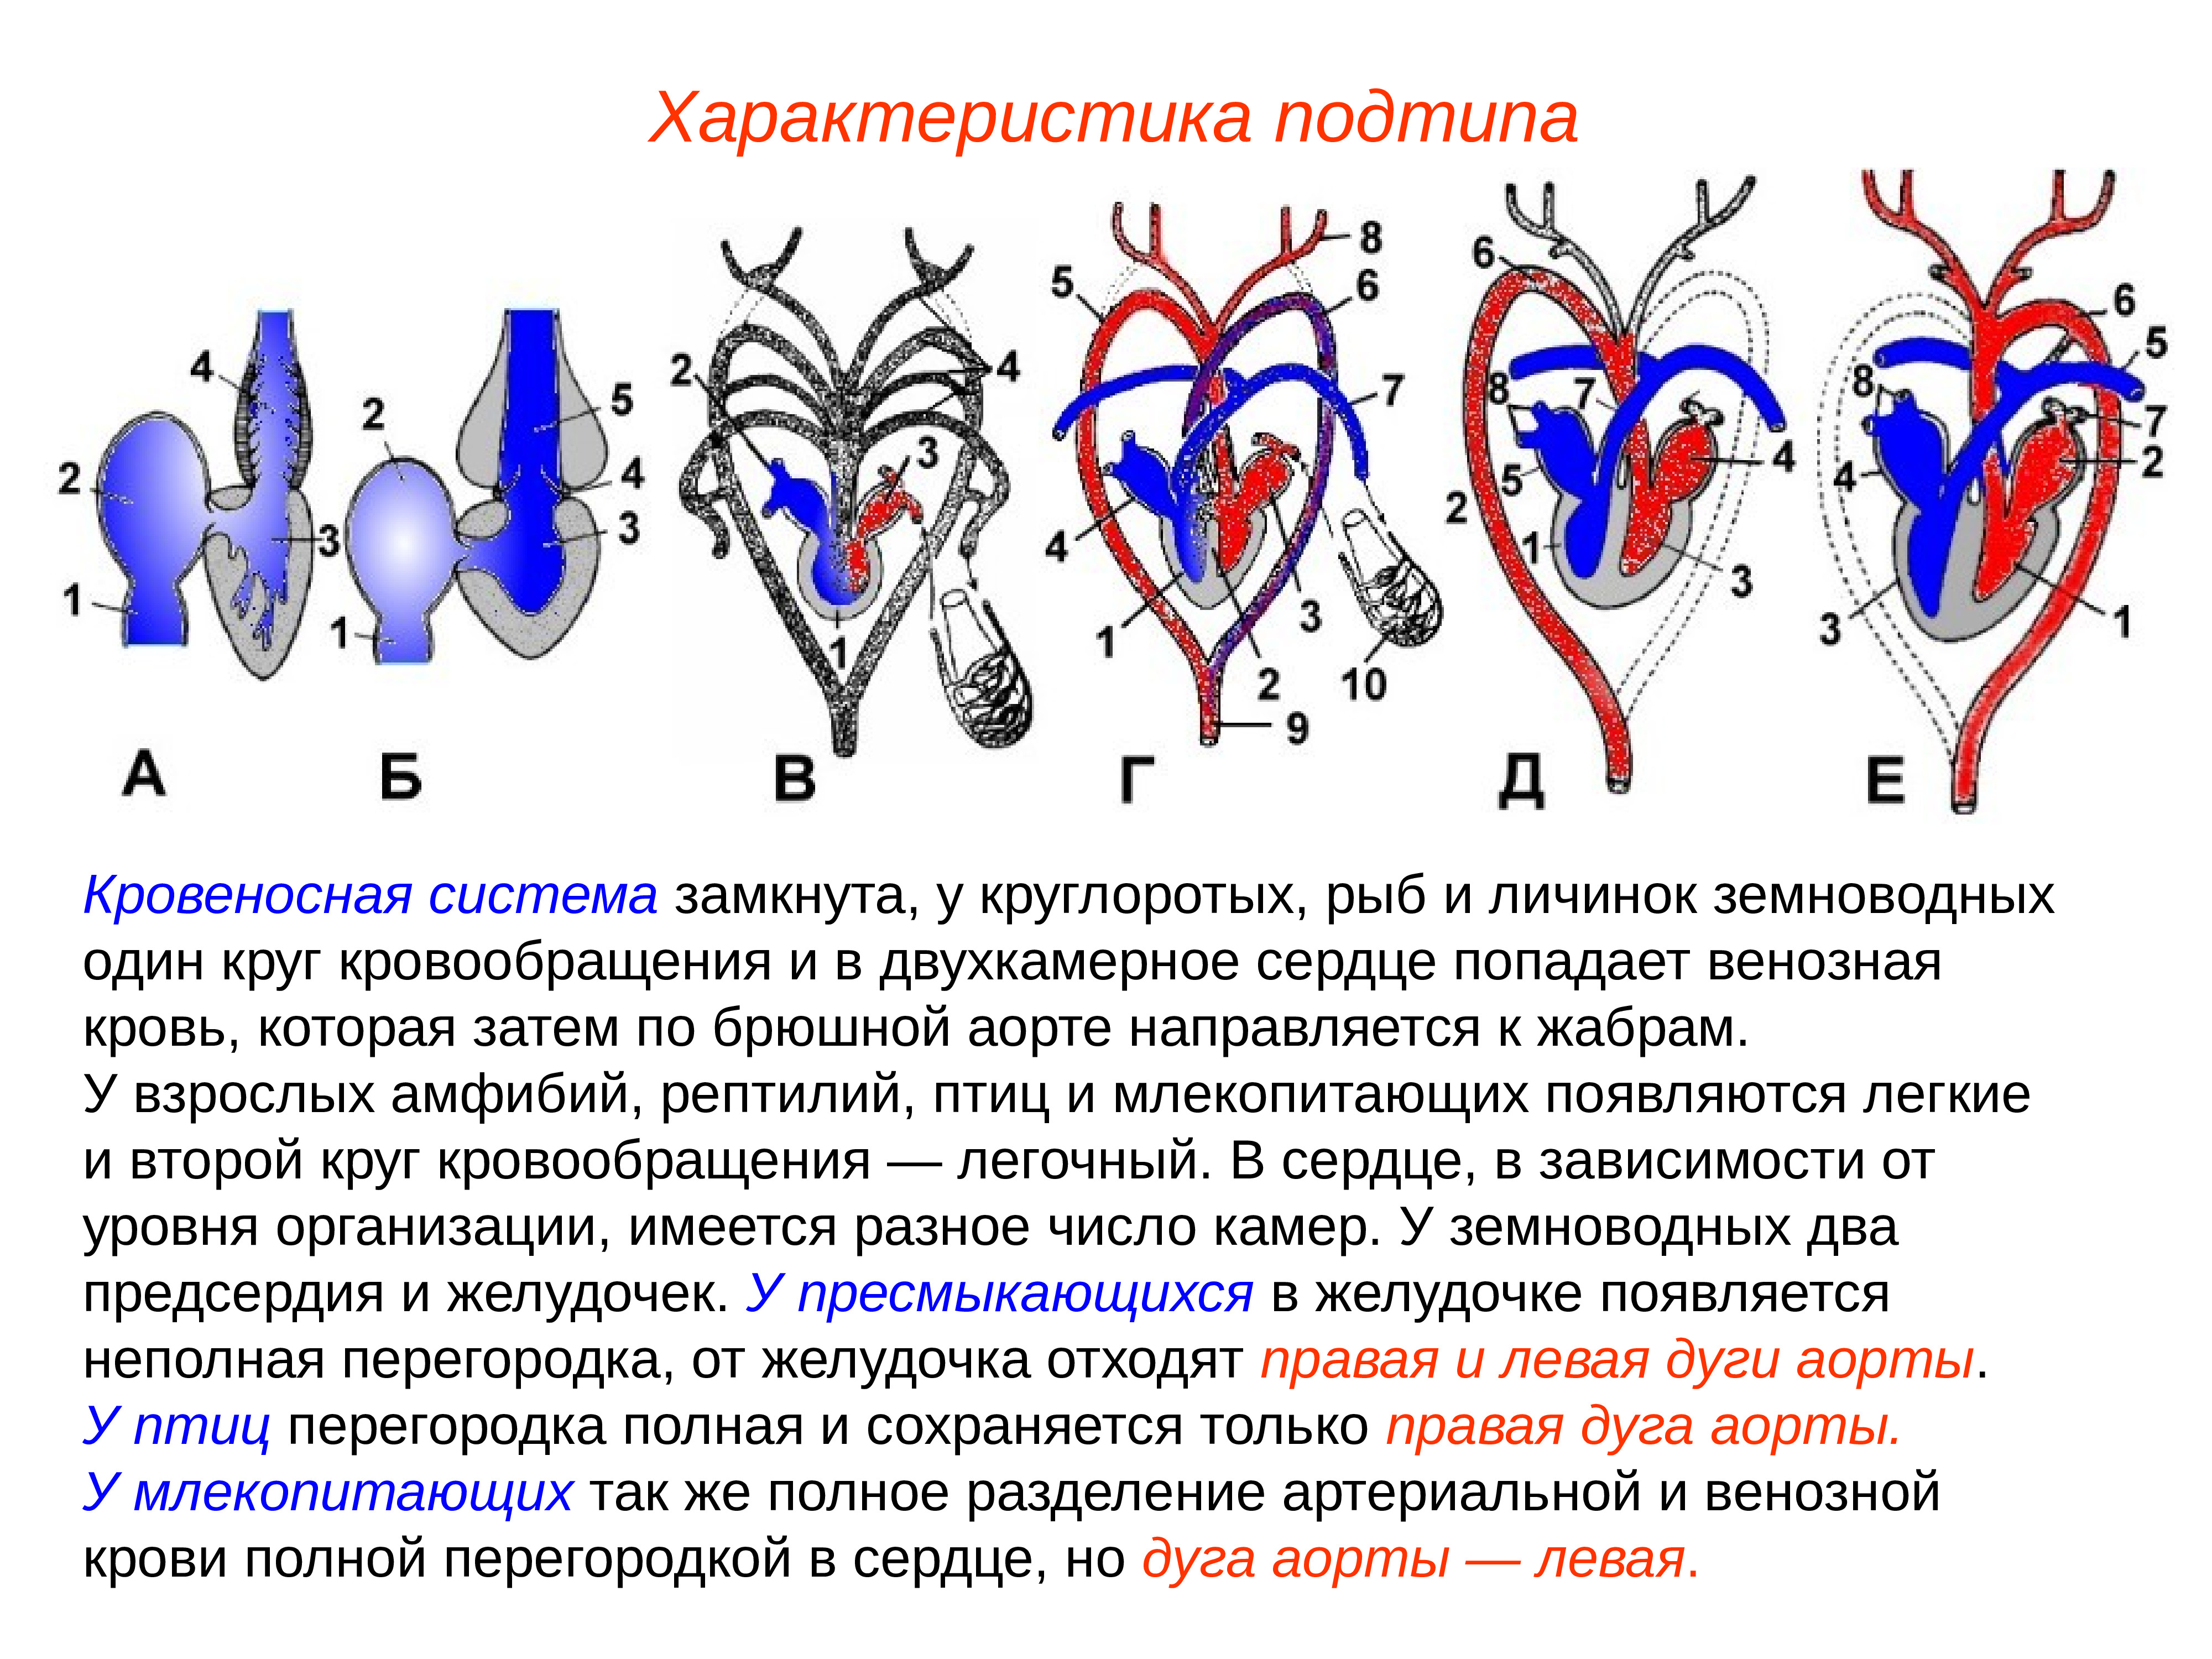 Земноводные пресмыкающиеся млекопитающие строение кровеносной системы сходство